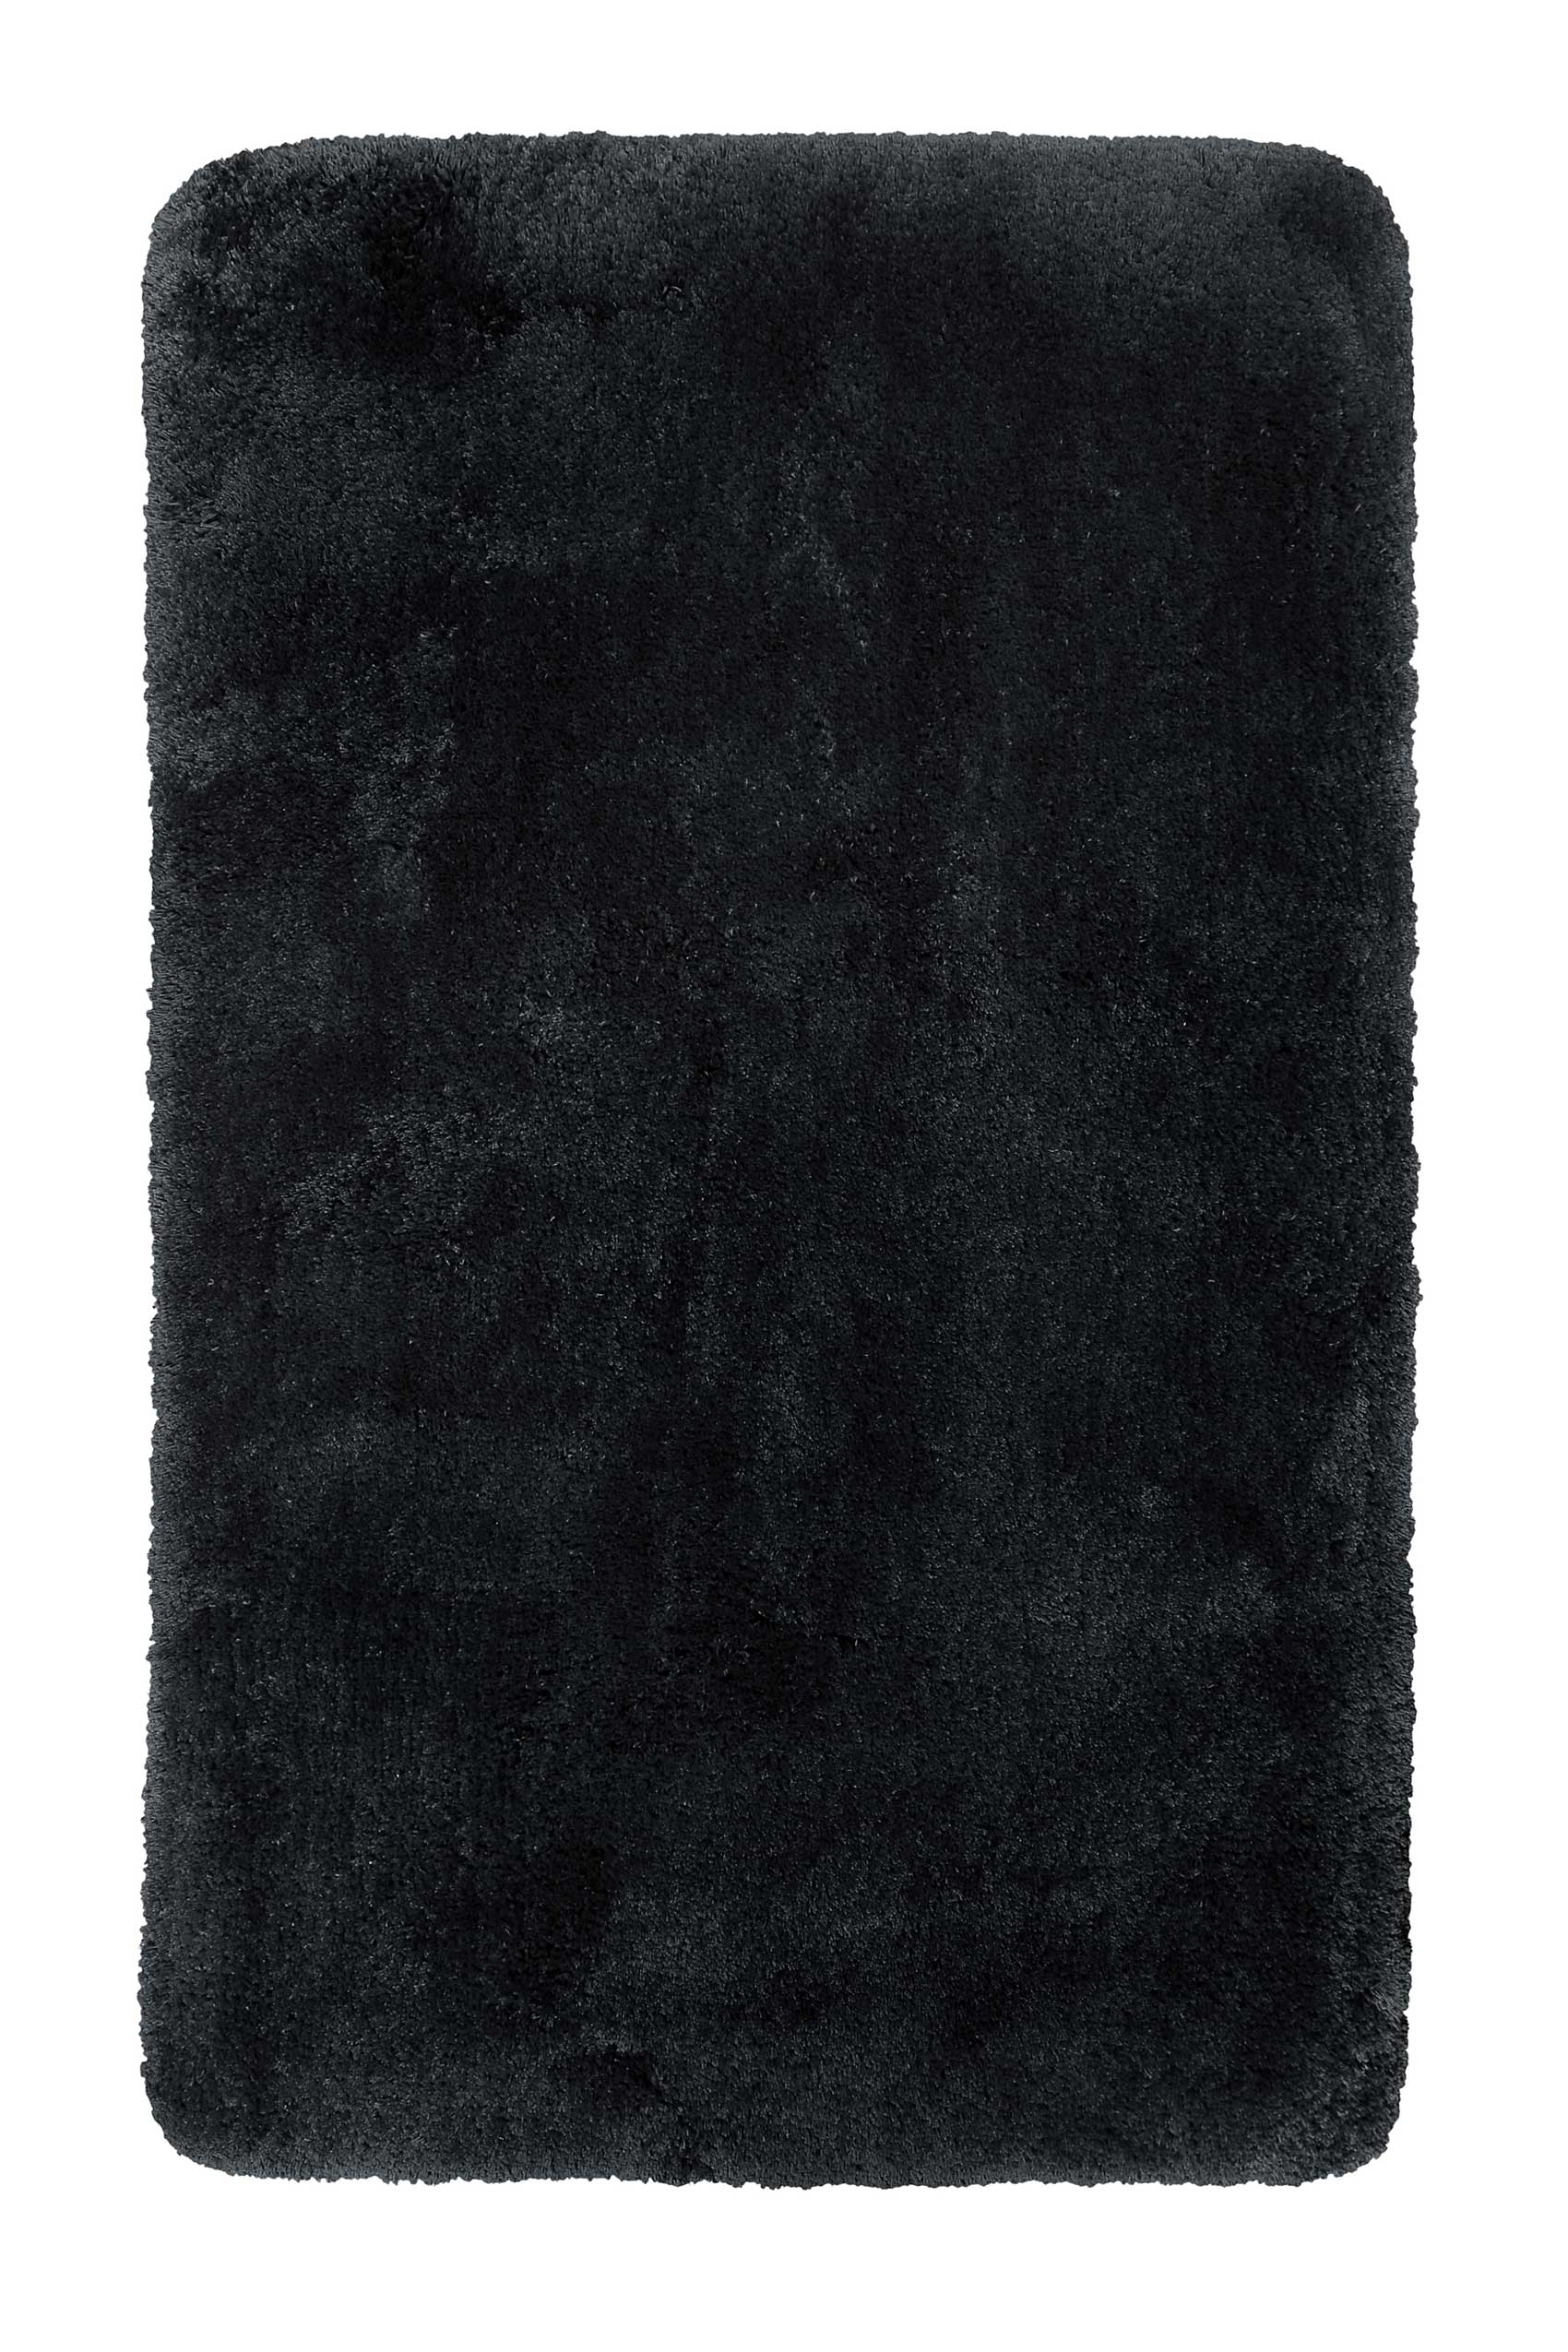 tapis de bain microfibre très doux uni noir 80x150